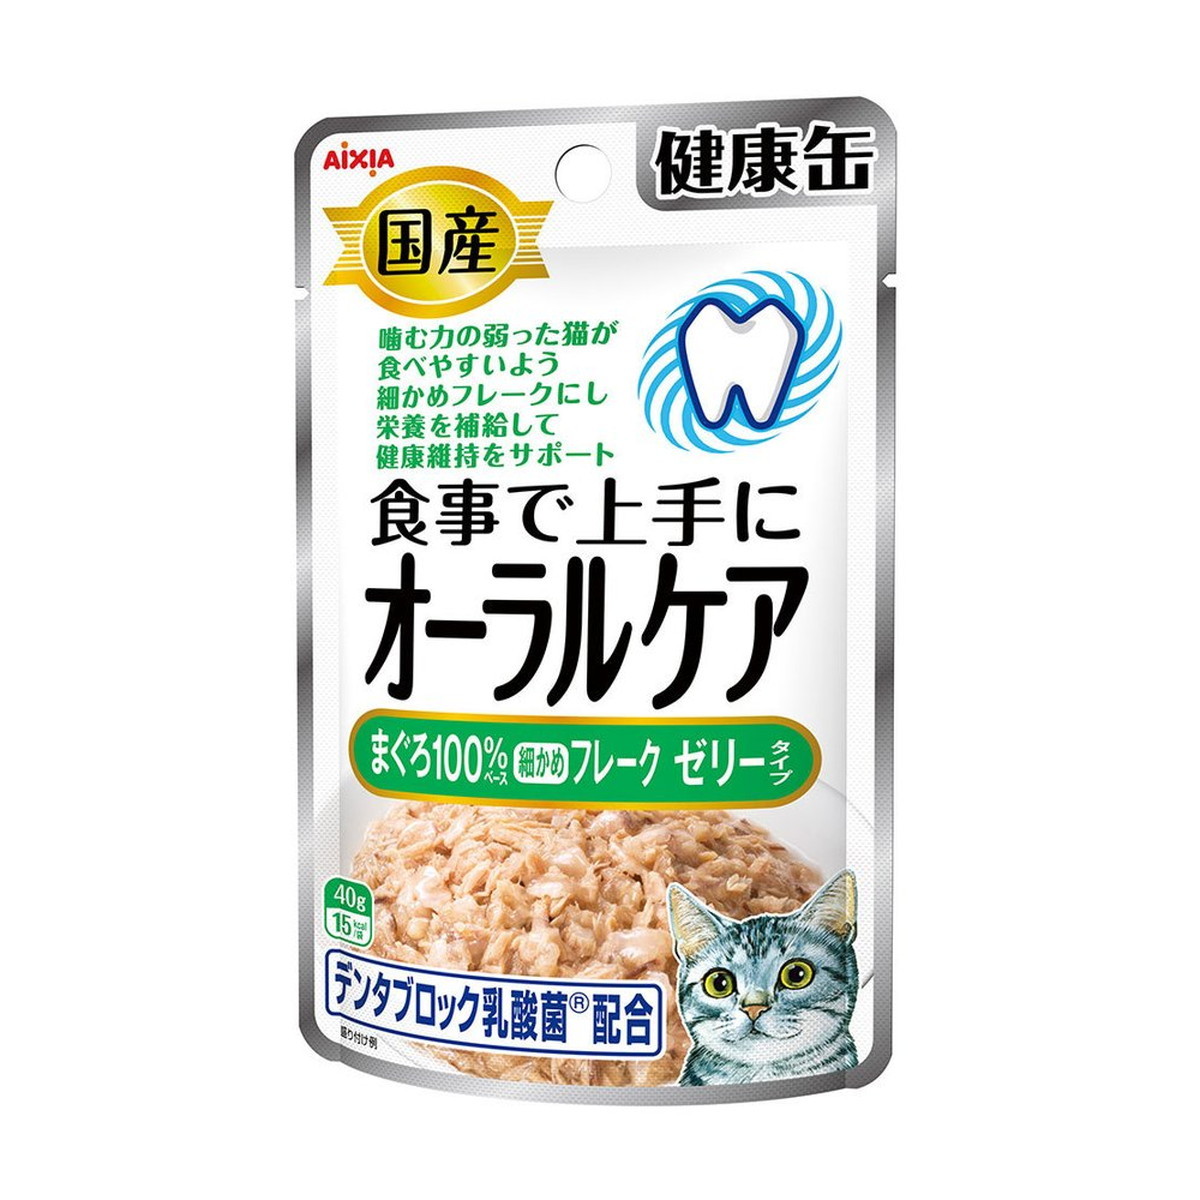 アイシア 国産 健康缶パウチ オーラルケア まぐろ細かめフレーク ゼリータイプ 40g×1個 猫缶、ウエットフードの商品画像